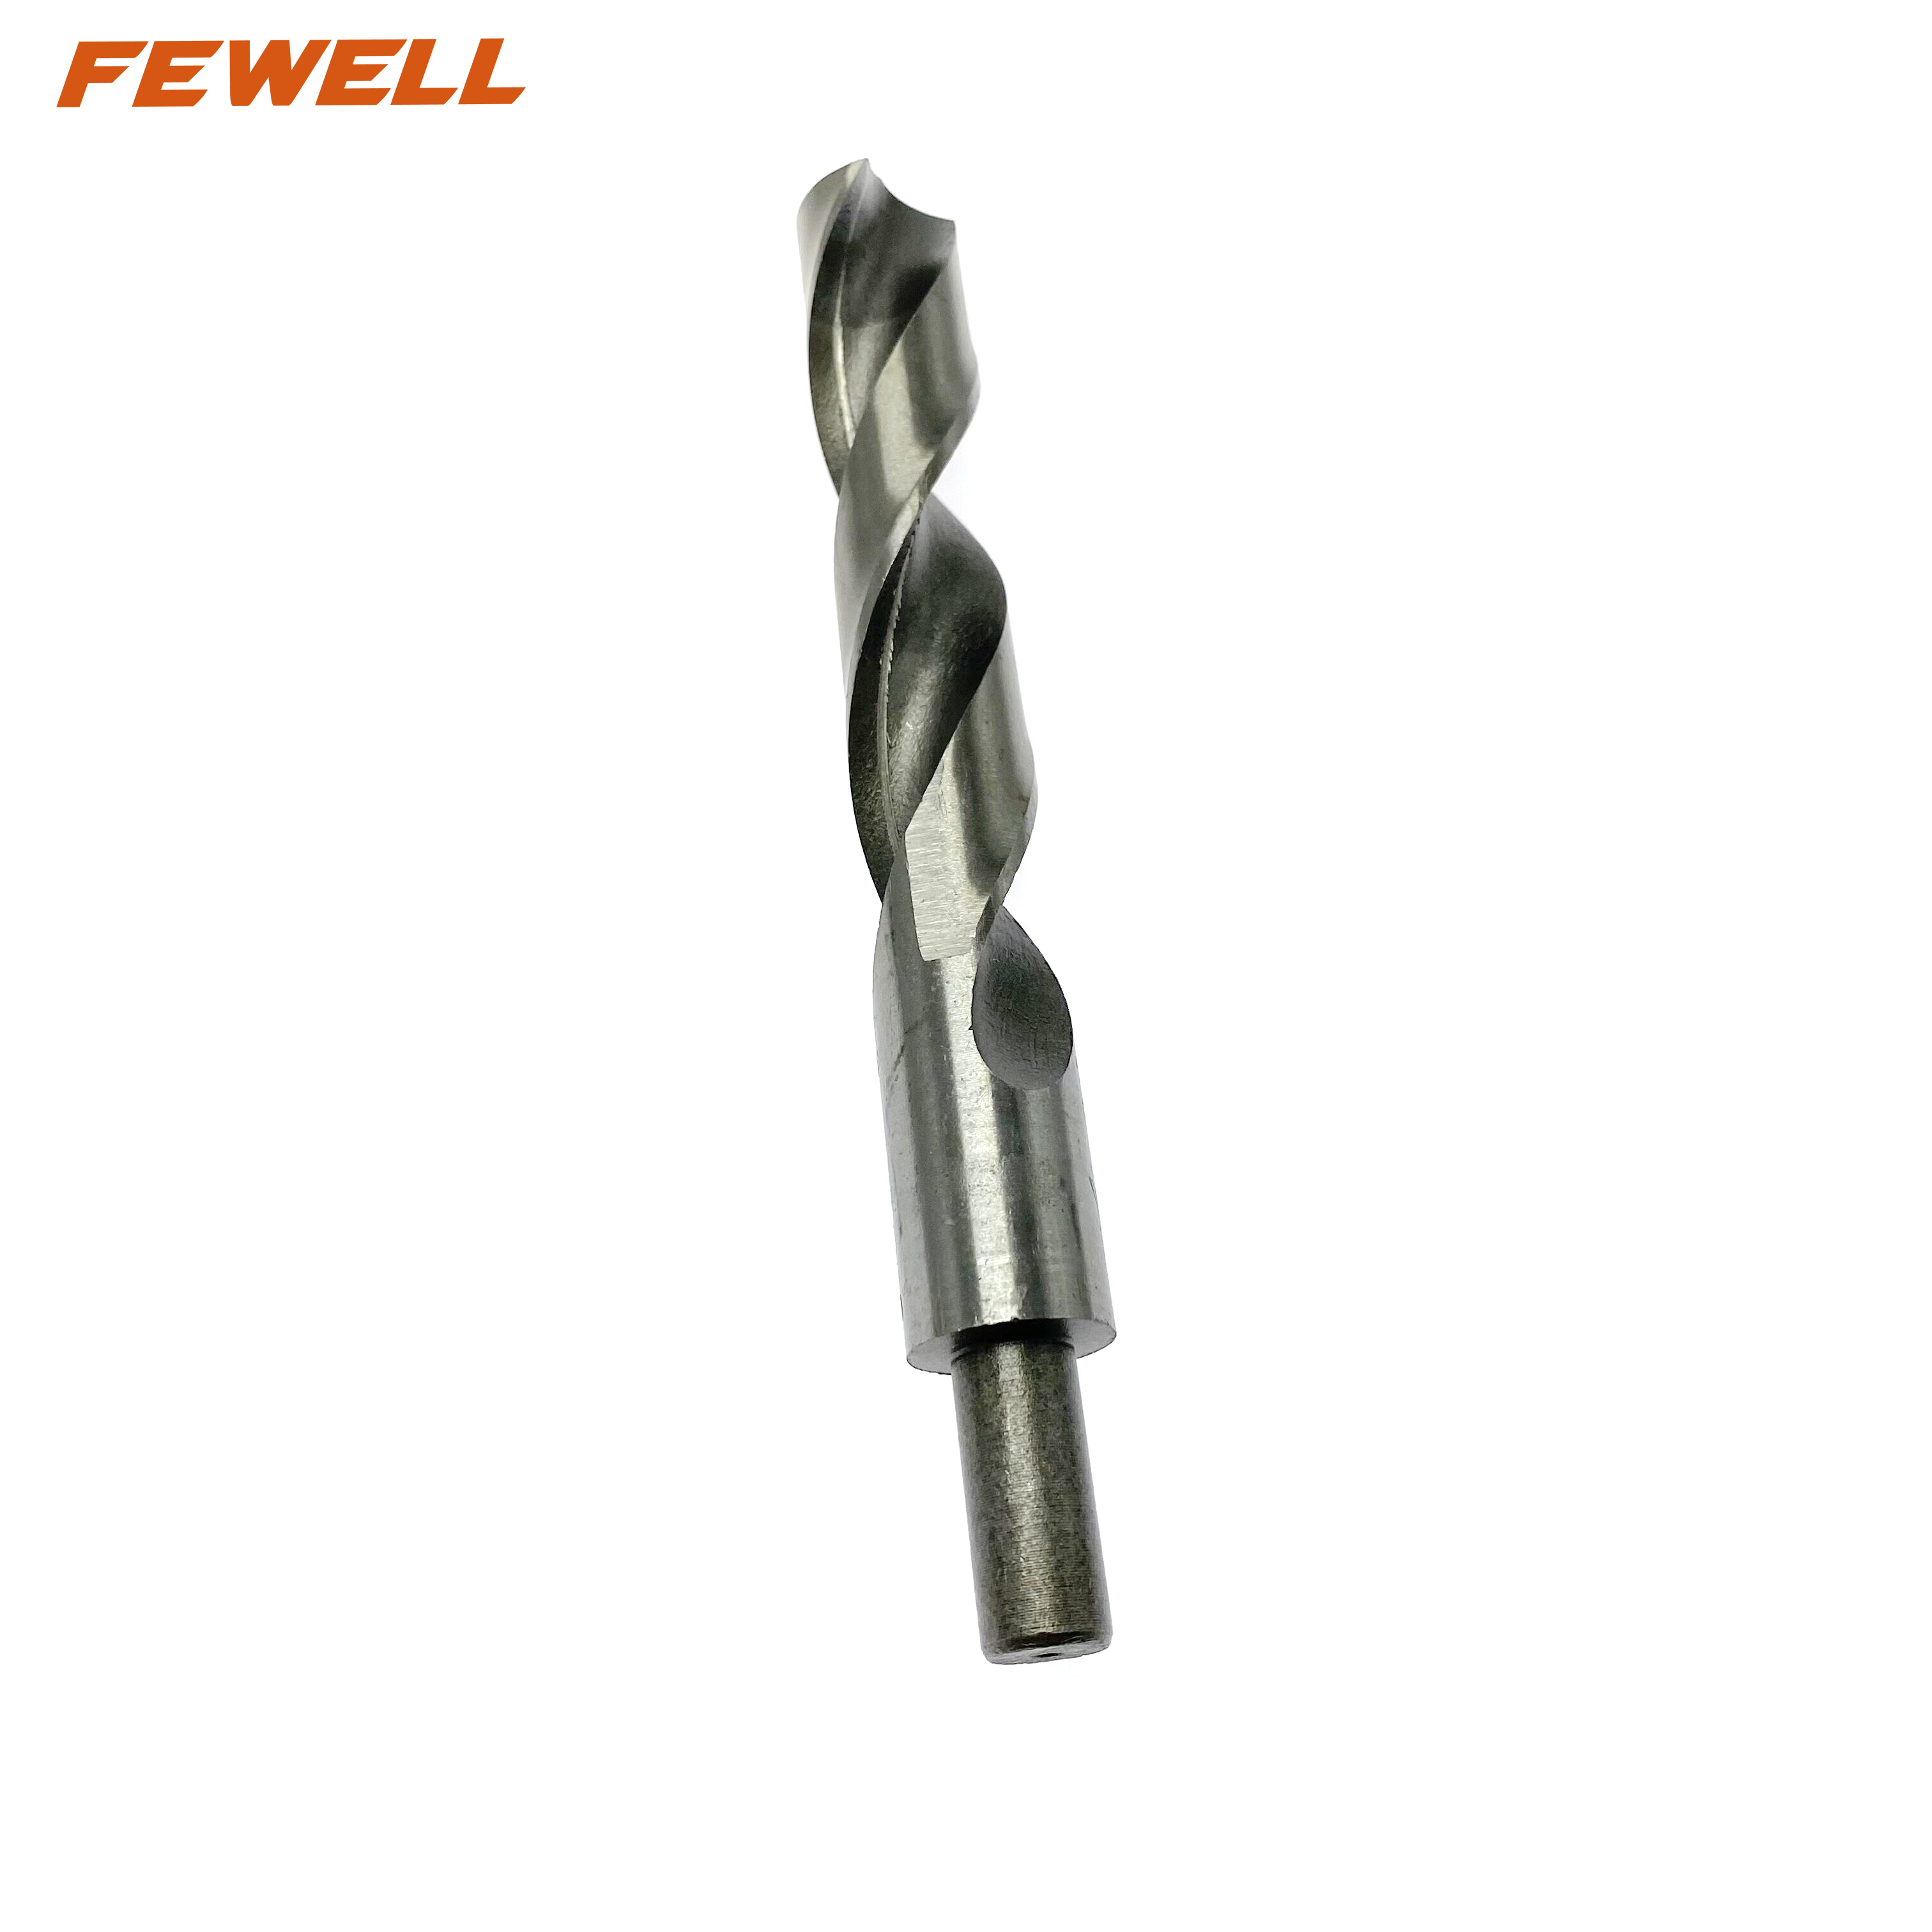 Metal delme için yüksek kaliteli 4241 HSS azaltılmış şaftlı büküm matkap ucu 22 mm